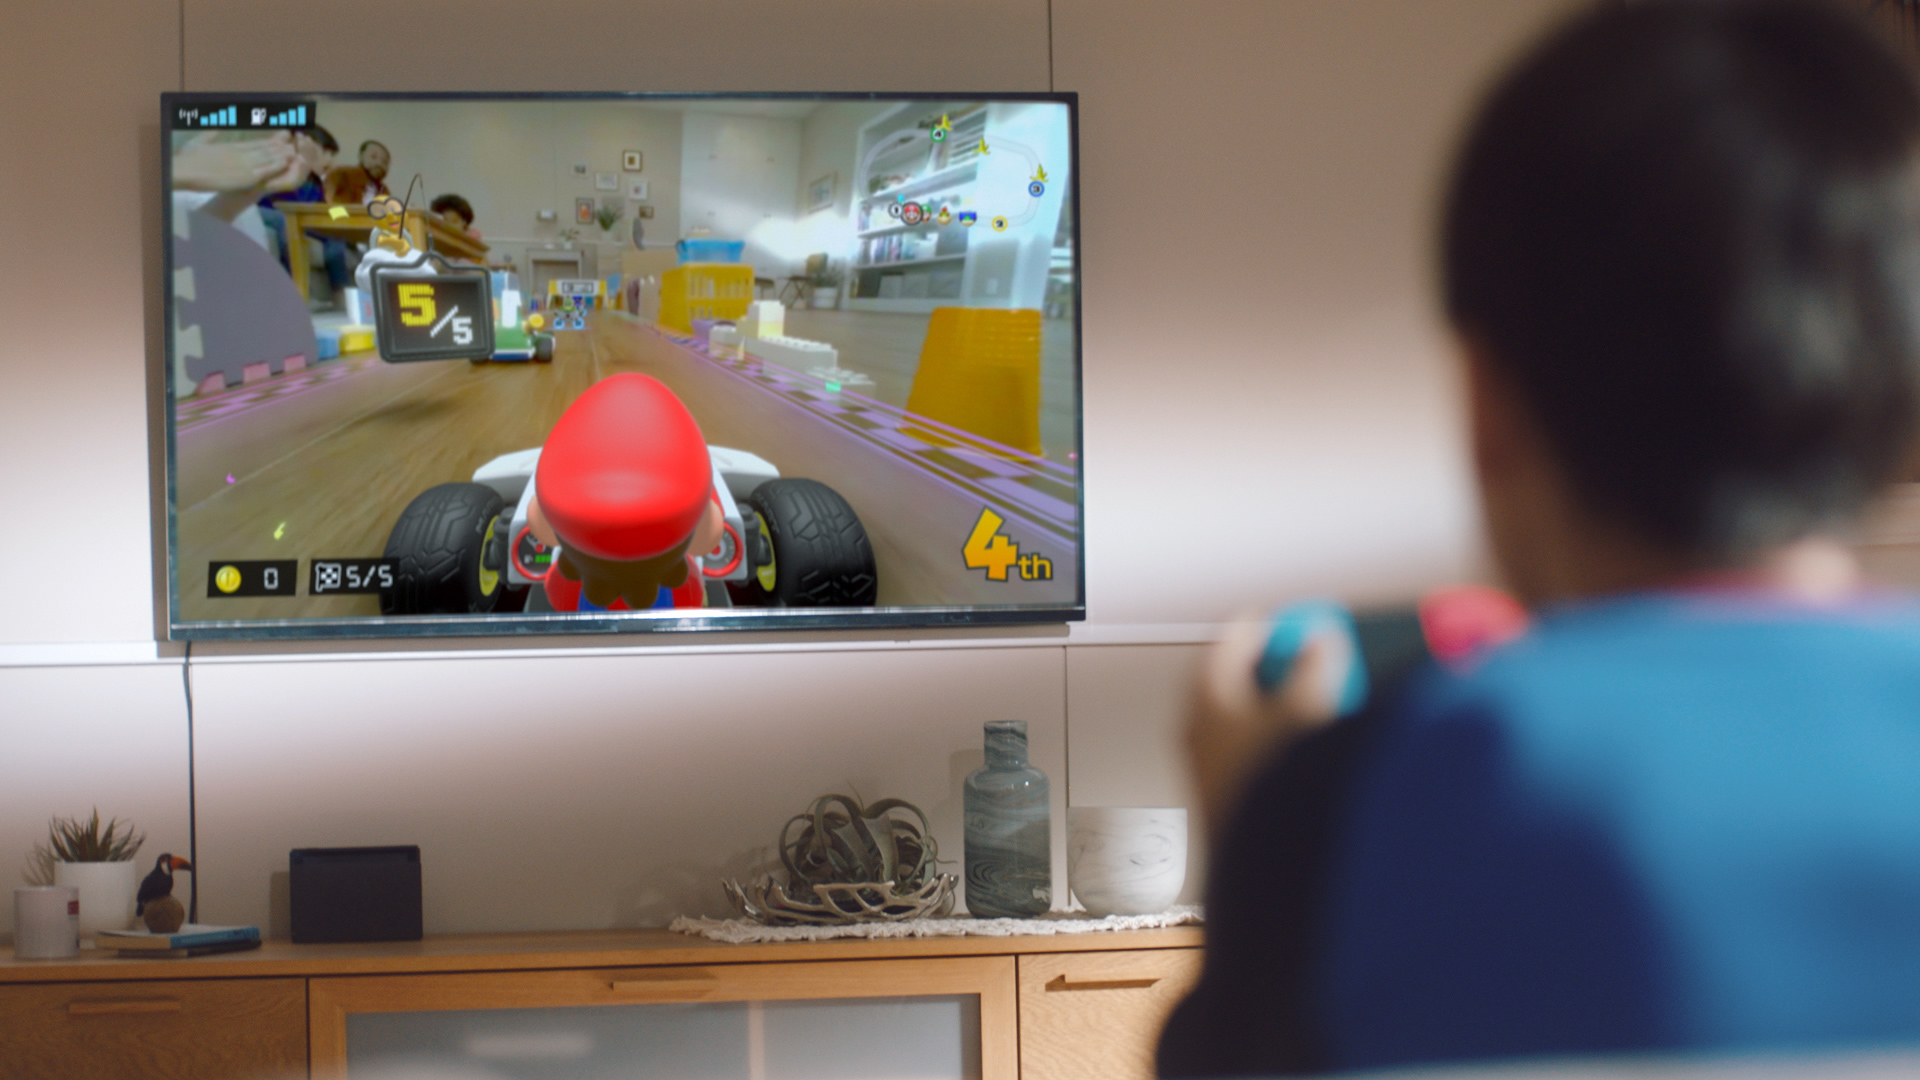 Exame Informática  Mario Kart Live: o 'carro telecomandado' que permite  jogar em Realidade Aumentada